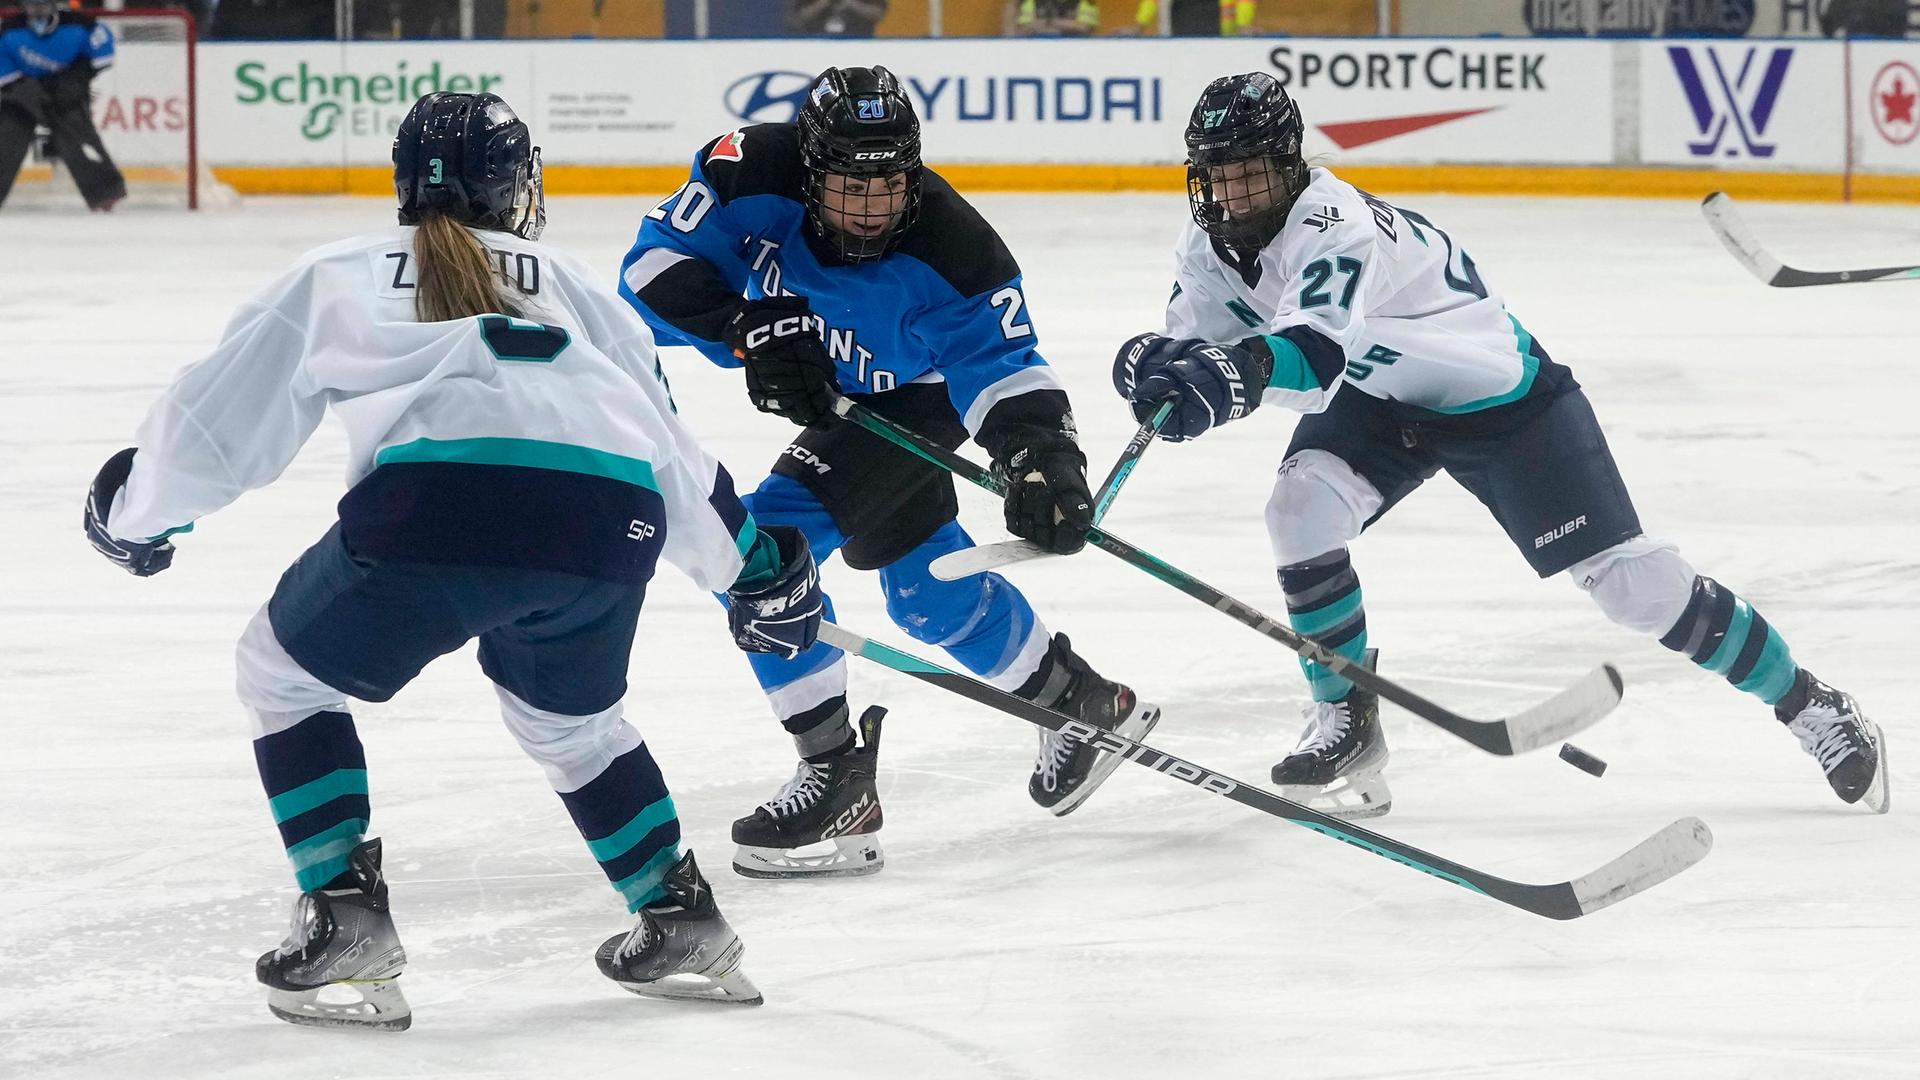 Zwei Eishockey-Spielerinnen vom Team aus New York in weißen Trikots versuchen einer Spielerin aus Toronto im blauen Trikot den Puck abzunehmen.